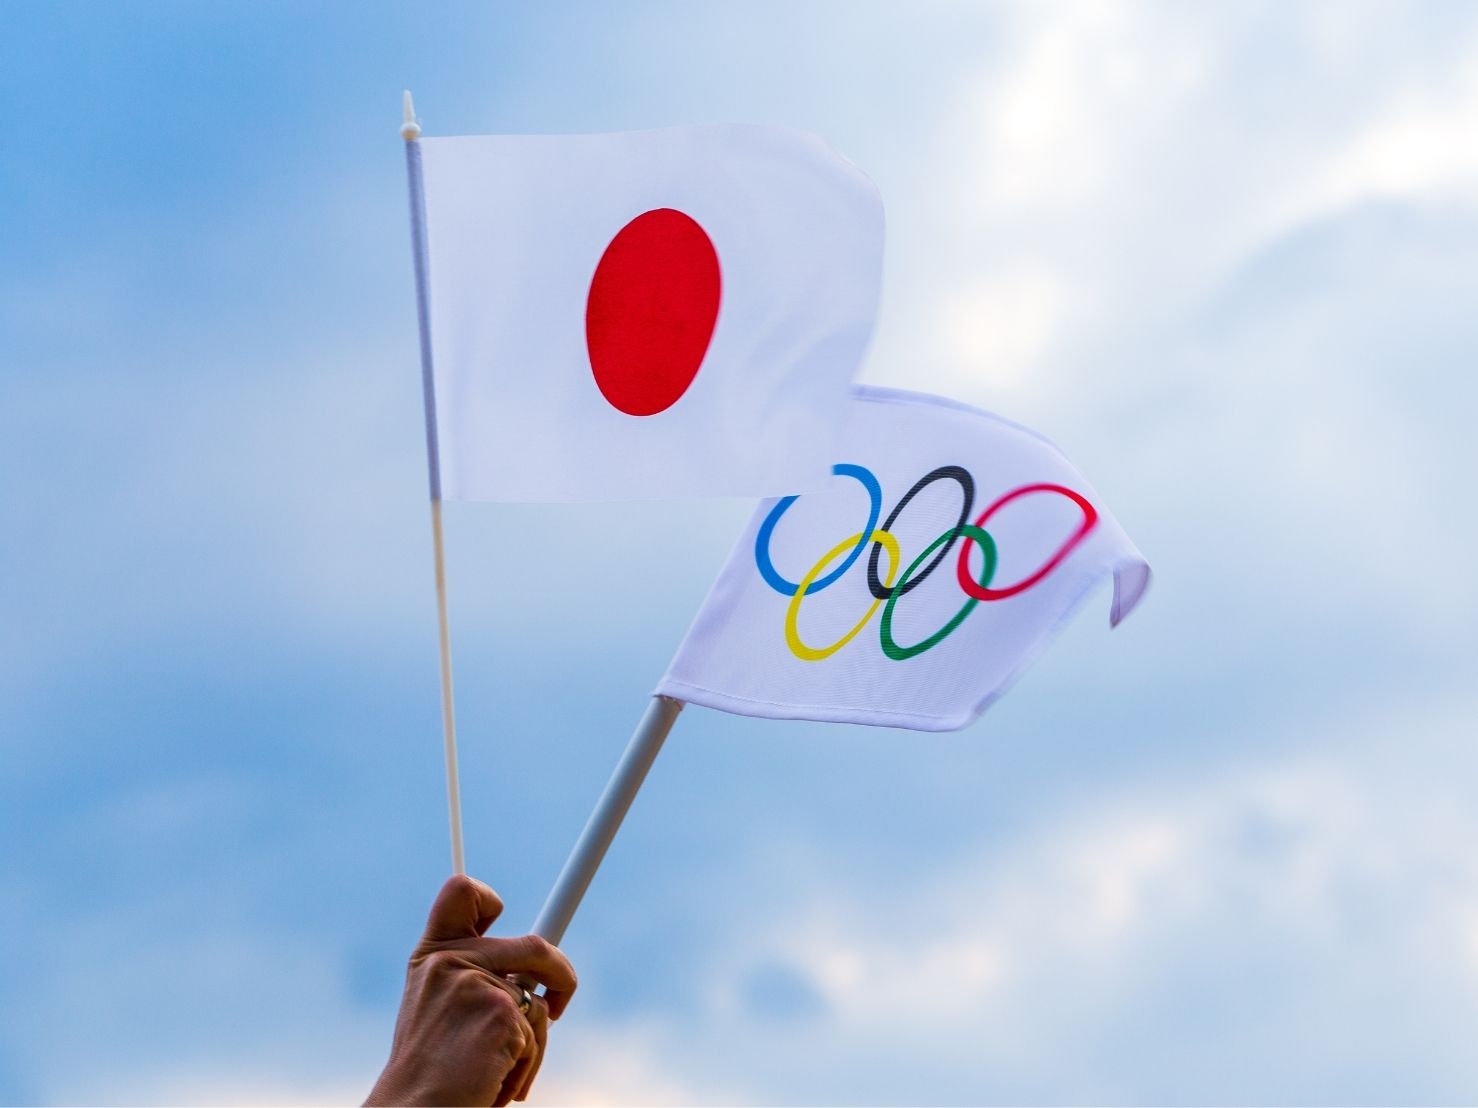 東京オリンピック 閉会式目前 オトナ世代が選ぶオリンピック名言ランキング Otona Salone オトナサローネ 自分らしく 自由に 自立して生きる女性へ